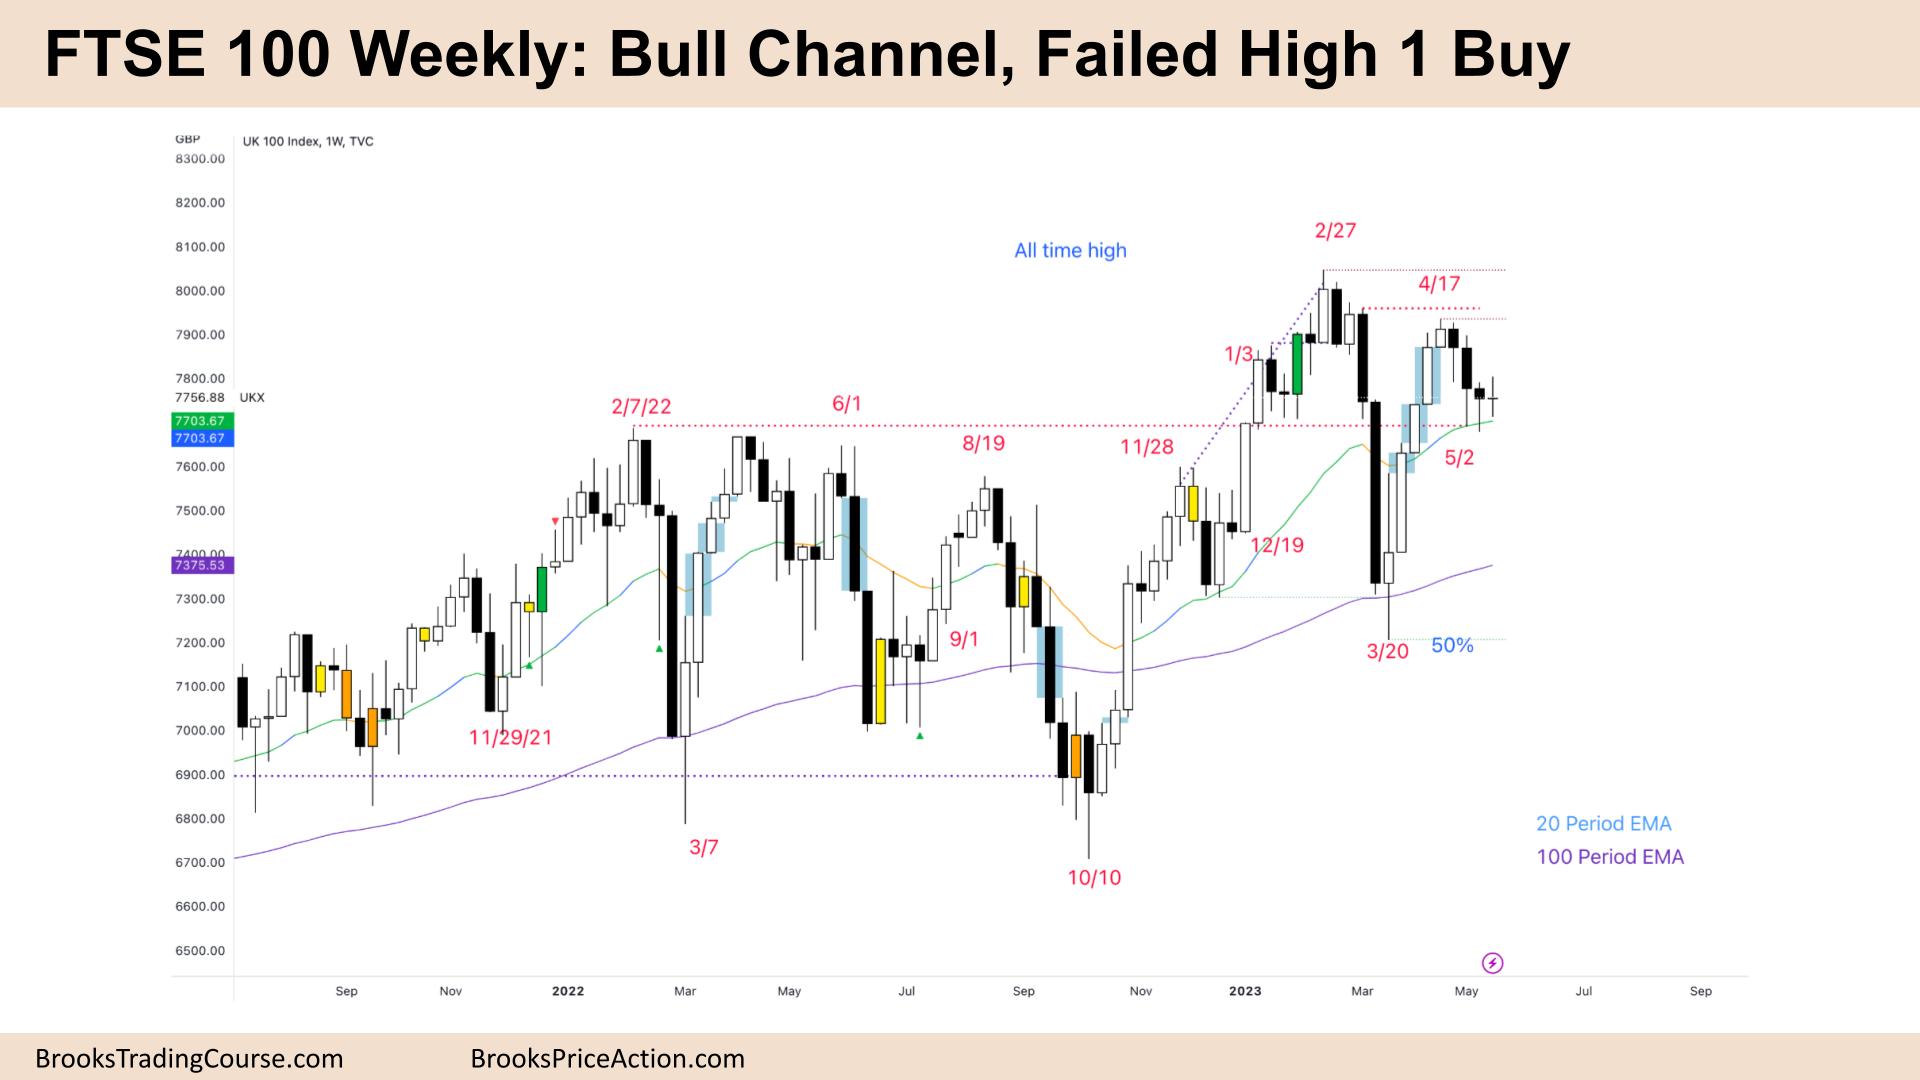 FTSE 100 Bull Channel Failed High 1 Buy